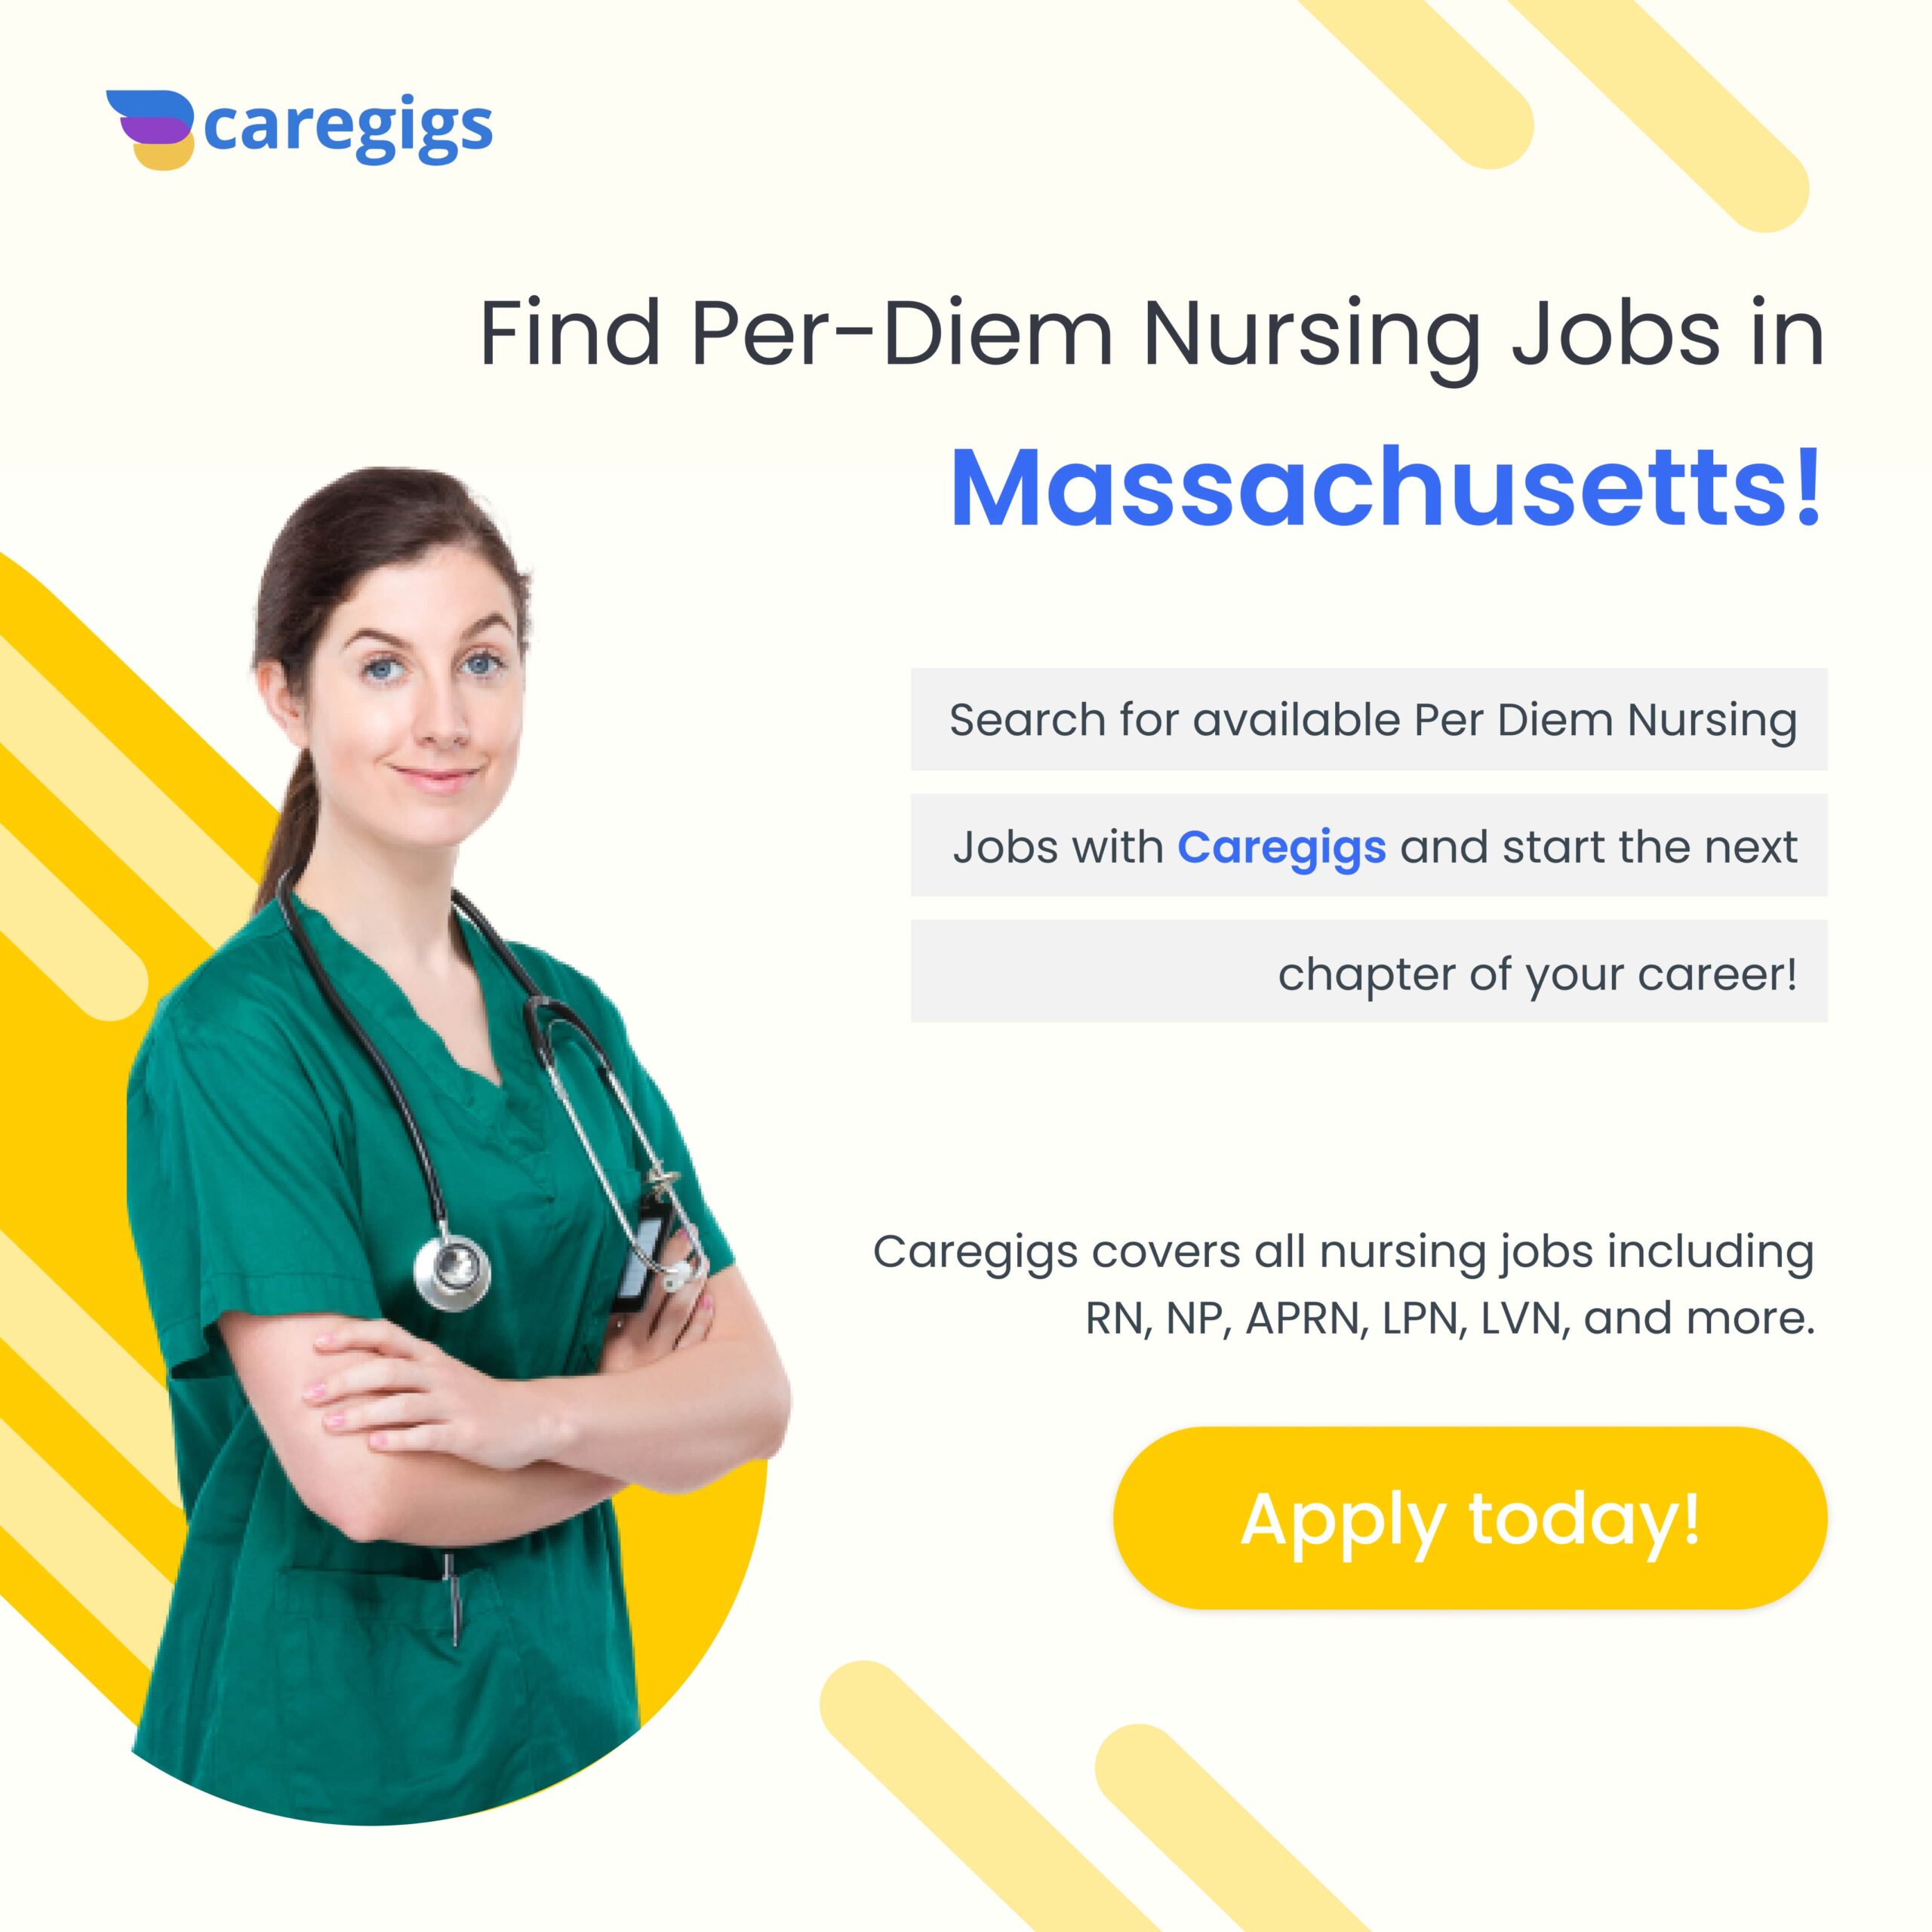 Find per-diem nursing job in the US!